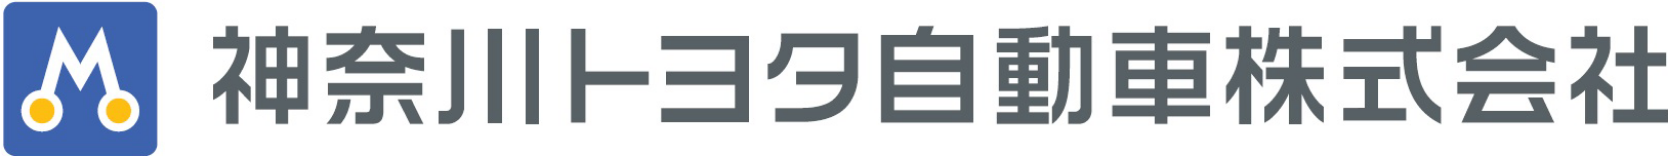 ロゴ画像：神奈川トヨタ自動車株式会社>